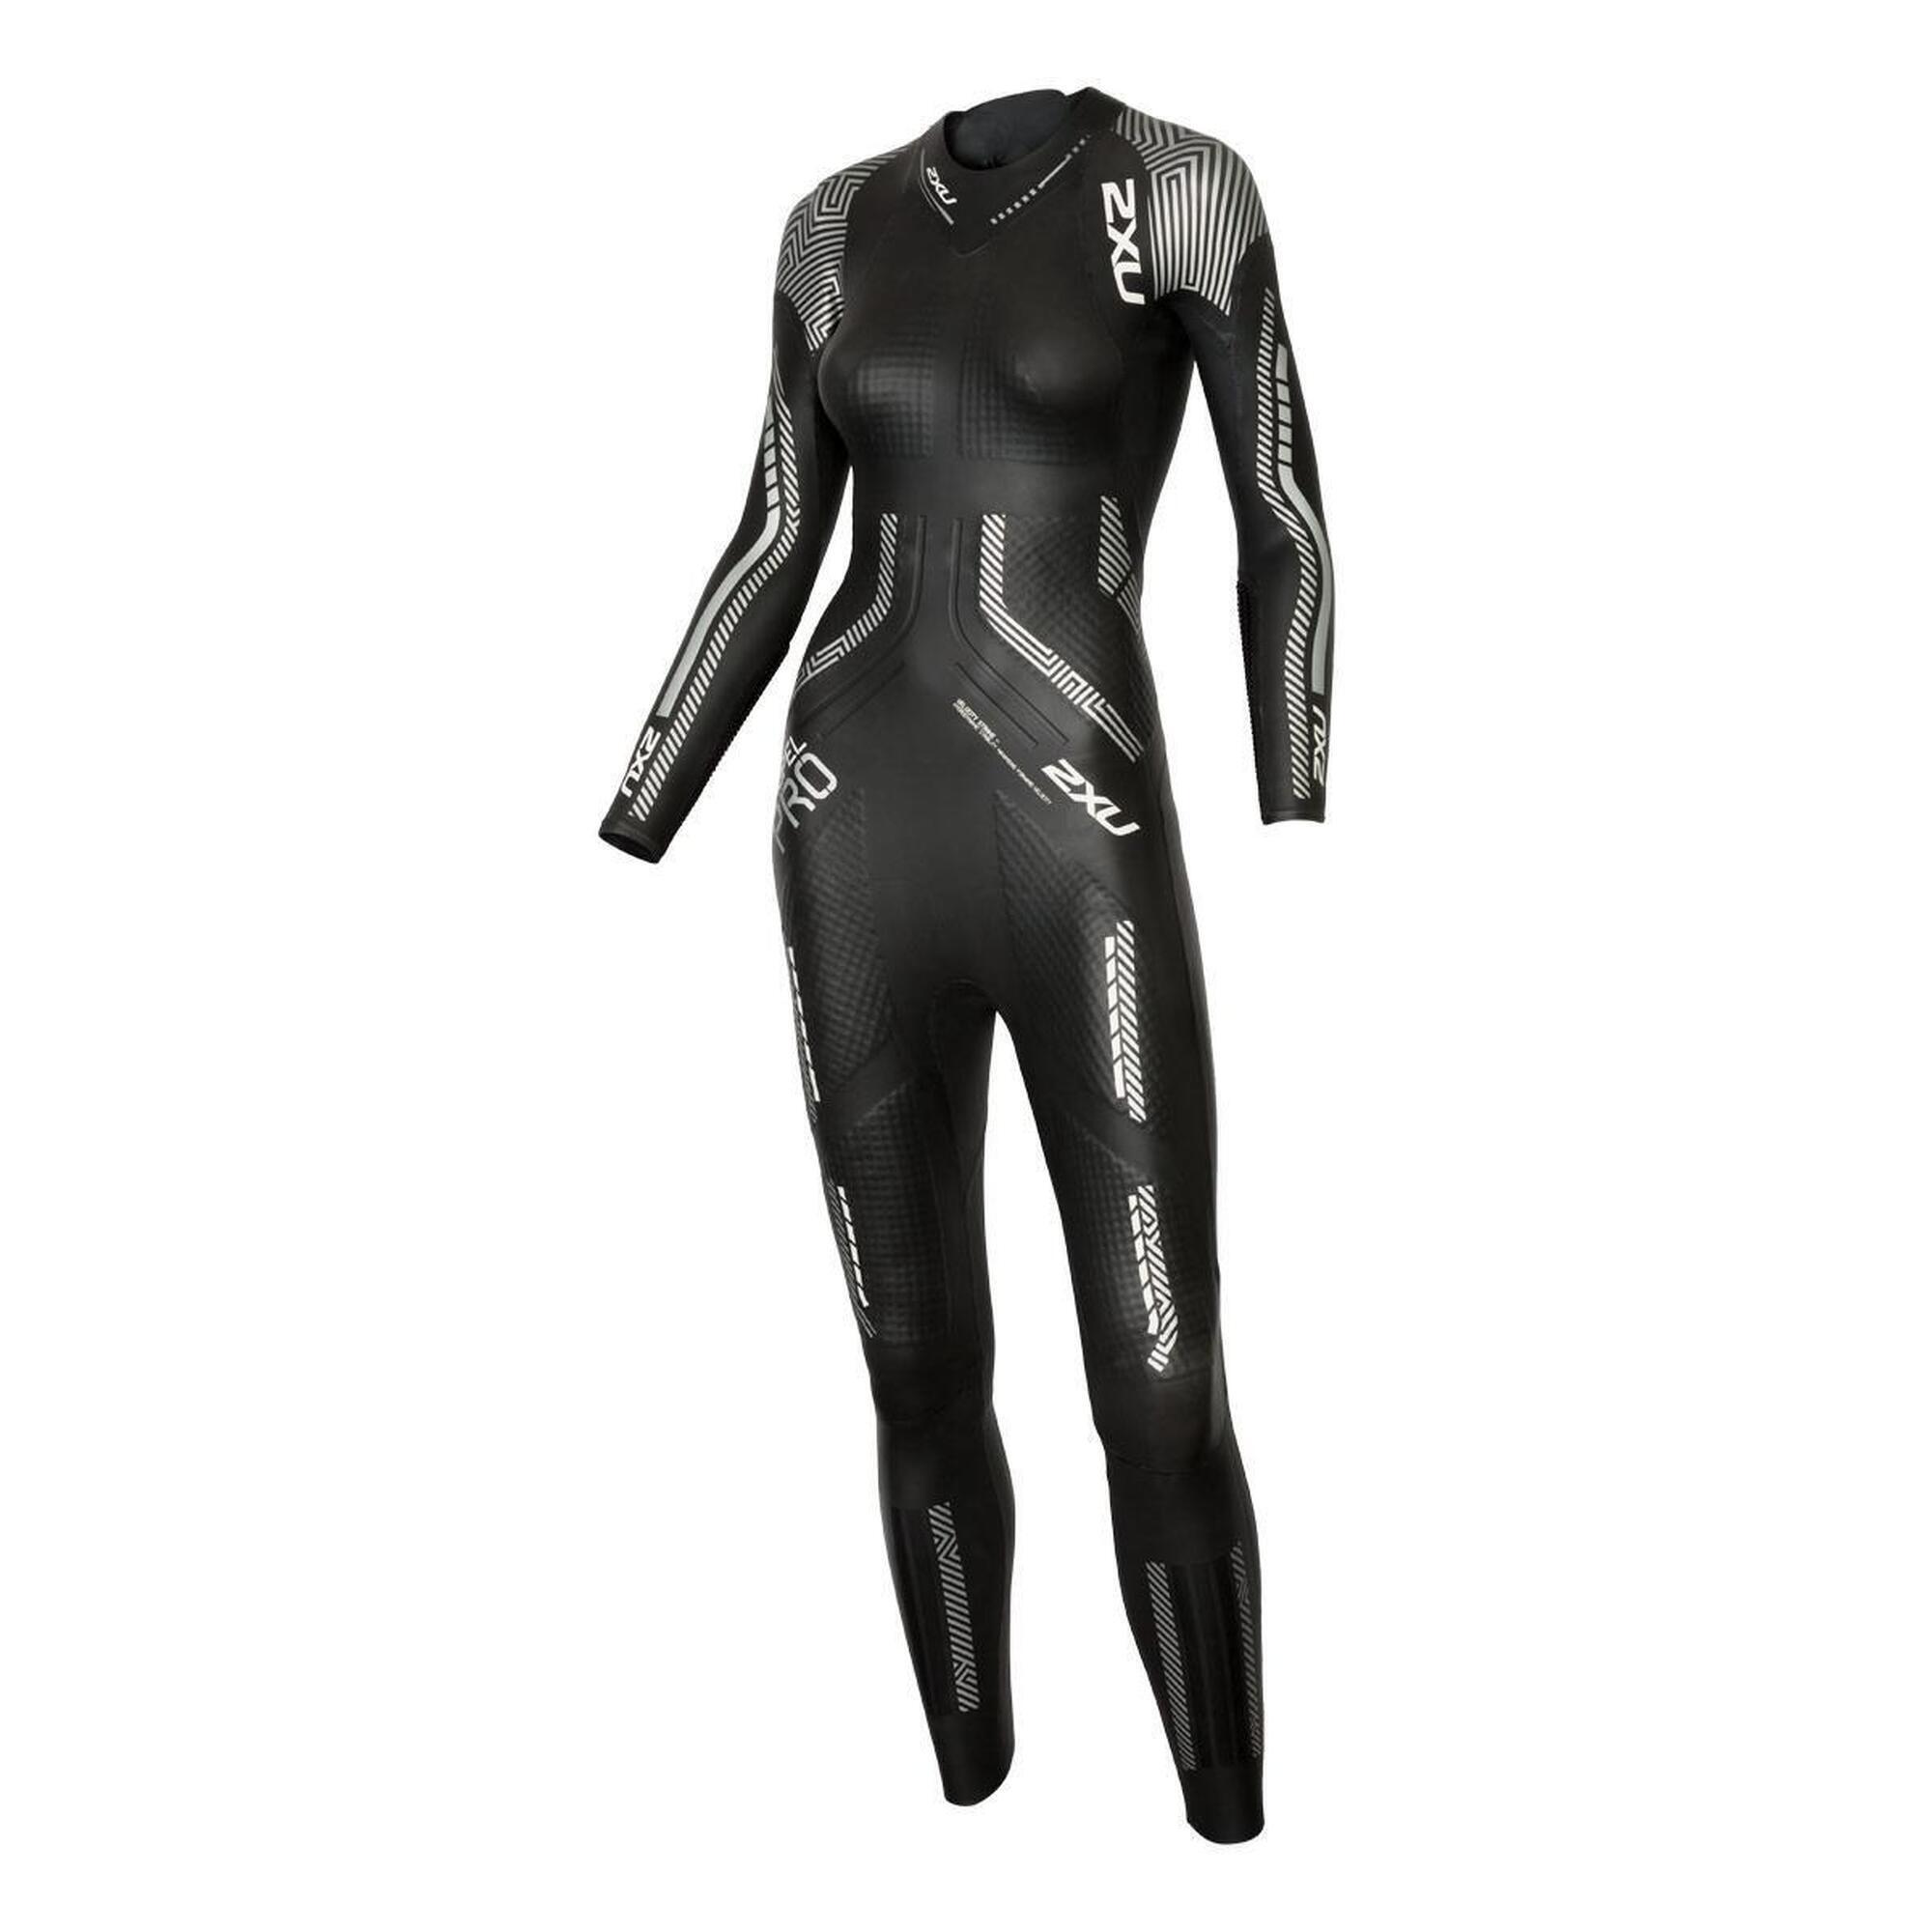 2XU 2XU Women's Propel Pro Wetsuit - Black/Silver